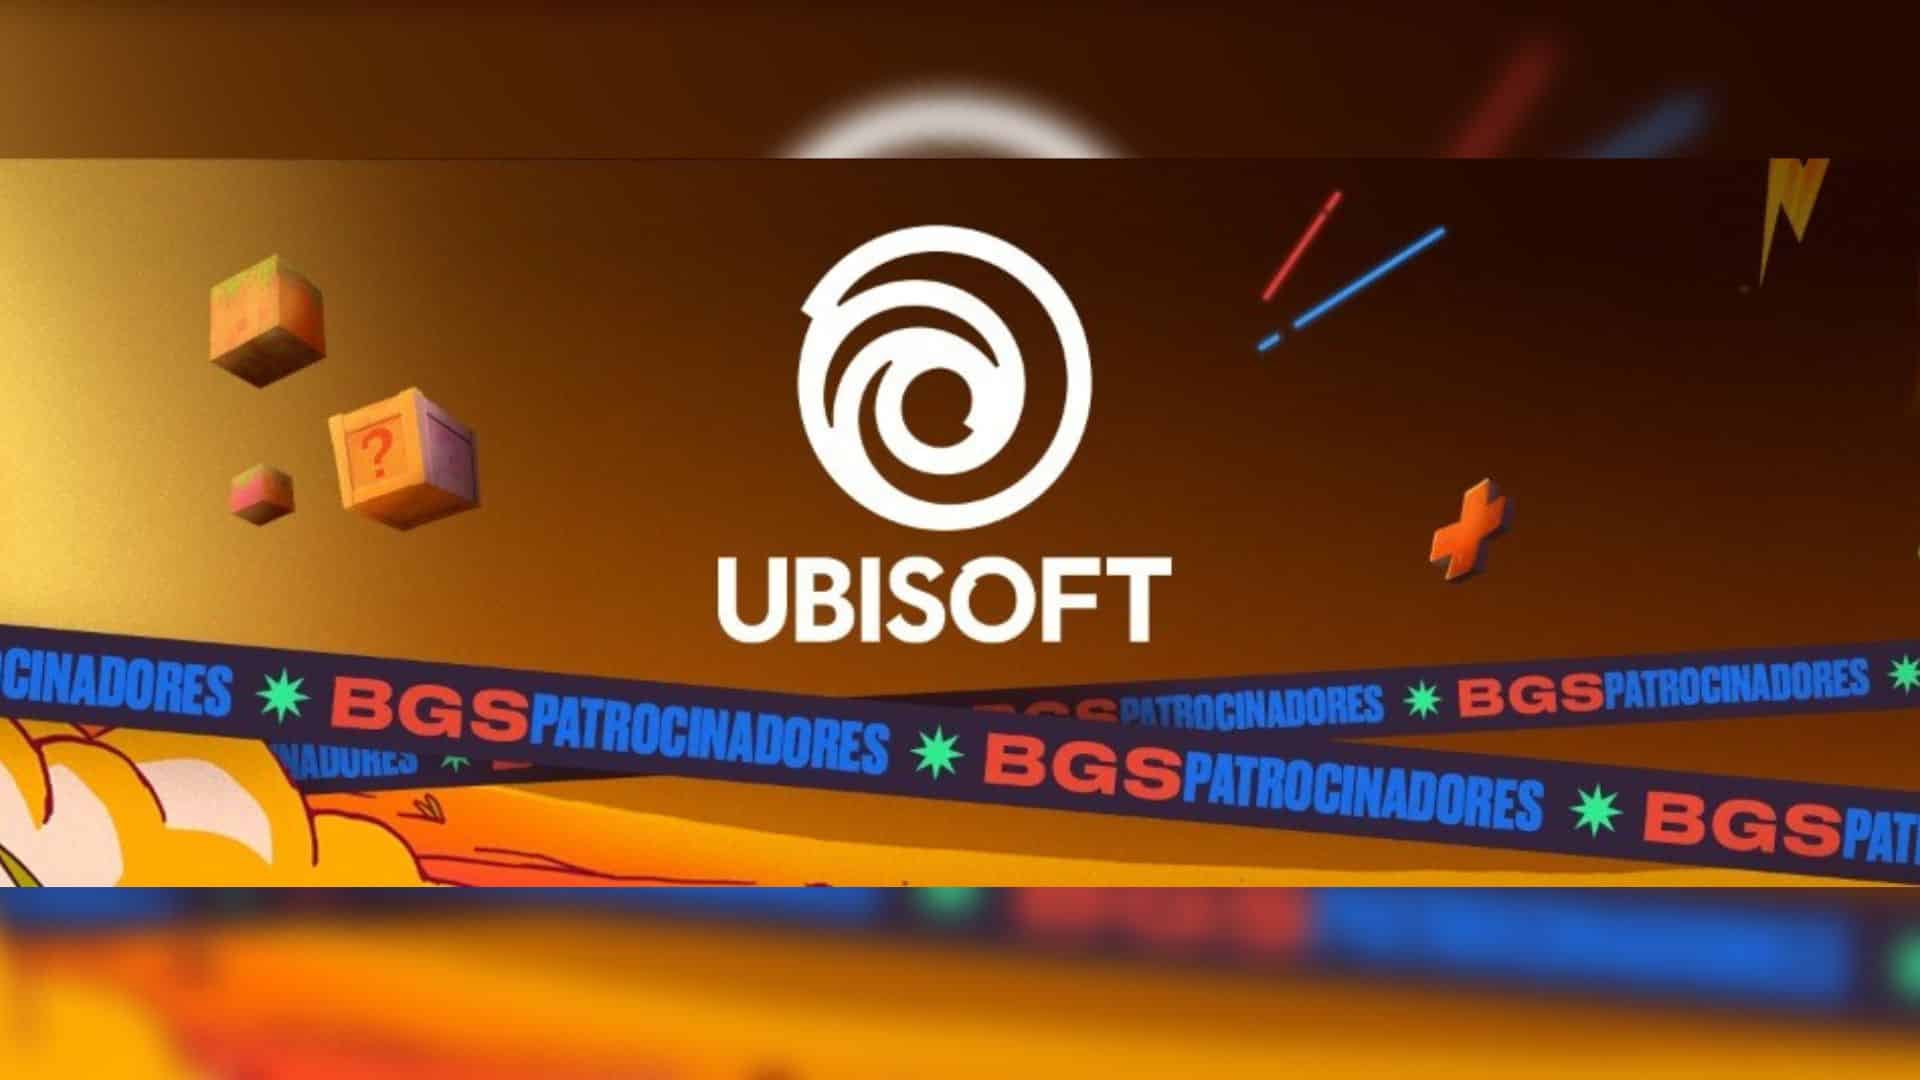 Ubisoft (BR)  Bem vindo ao site oficial da Ubisoft